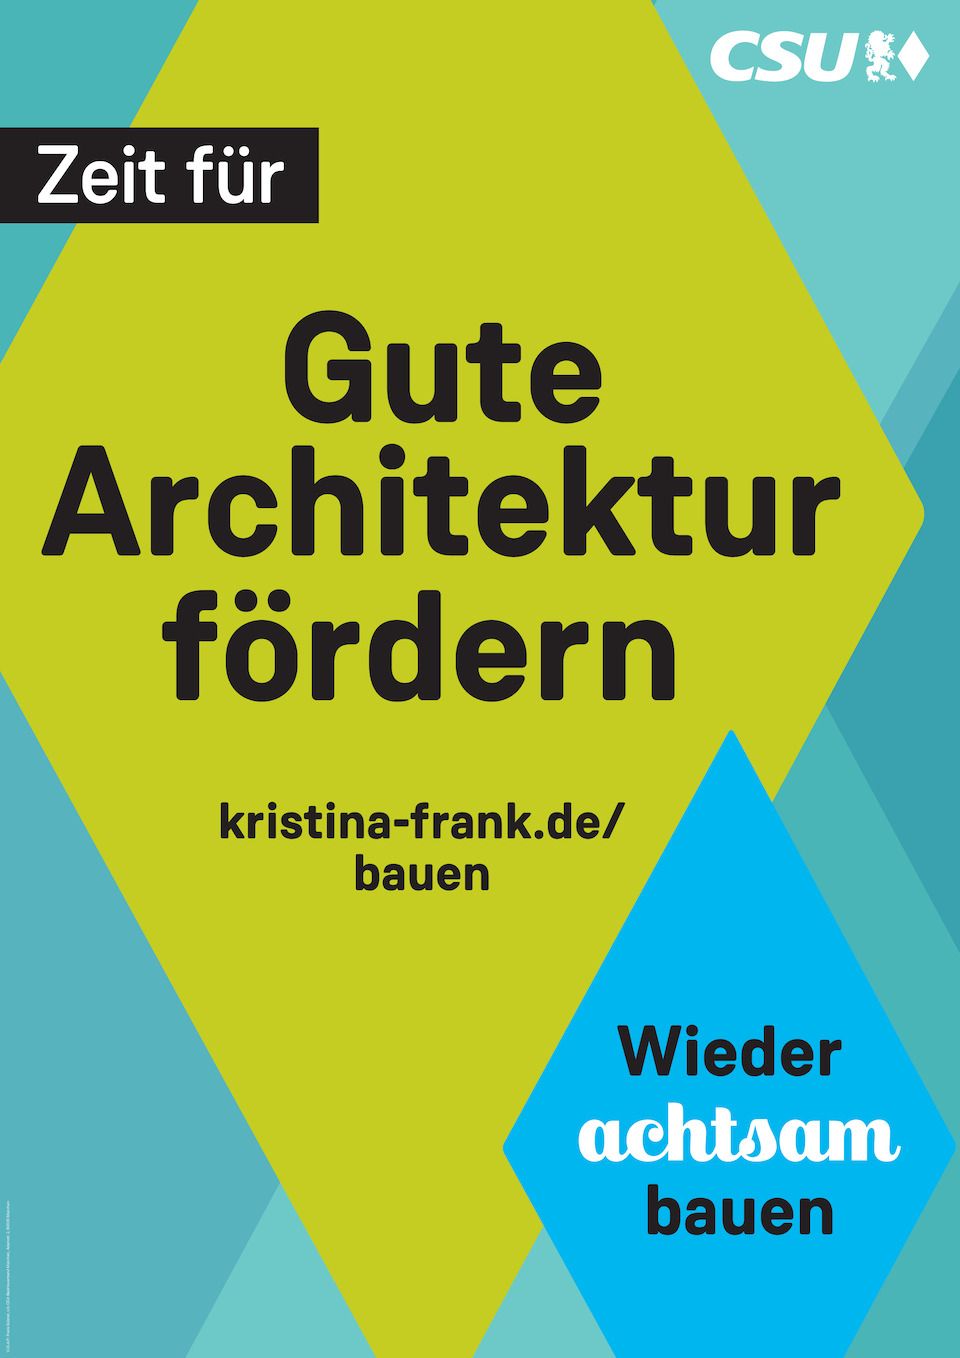 Wahlplakat Kristina Frank - Zeit für gute Architektur fördern